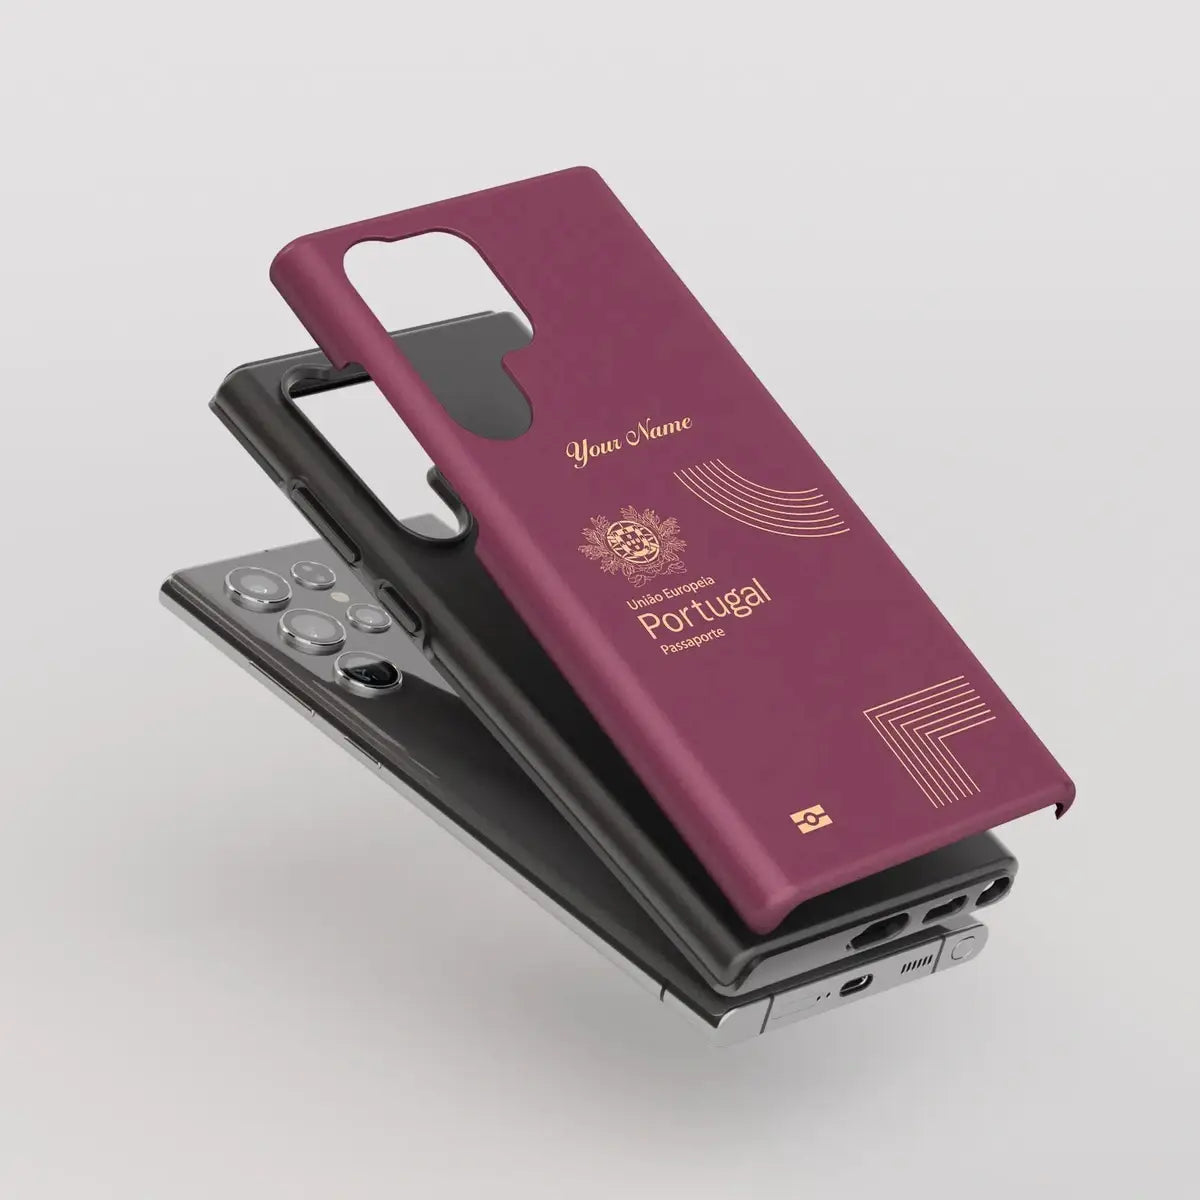 Portugal Passport - Samsung Galaxy S Case